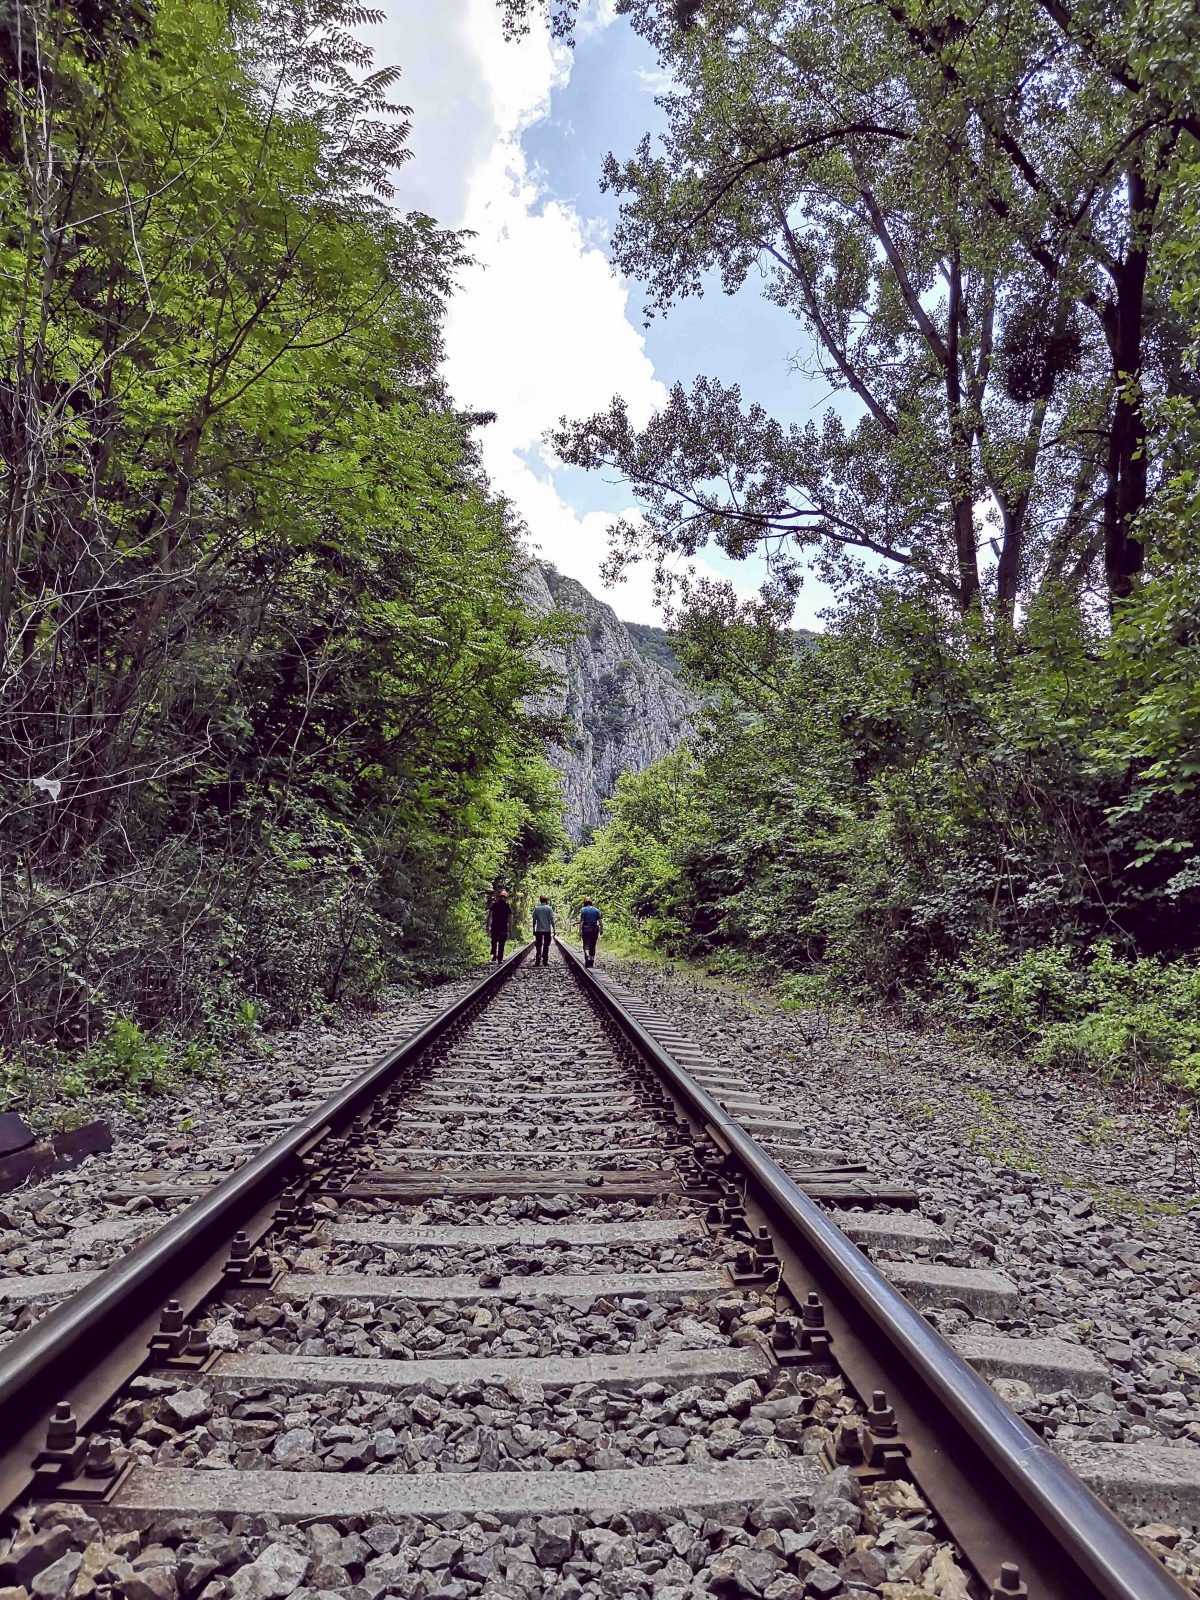 Three people walking along train tracks in the Western Carpathians.